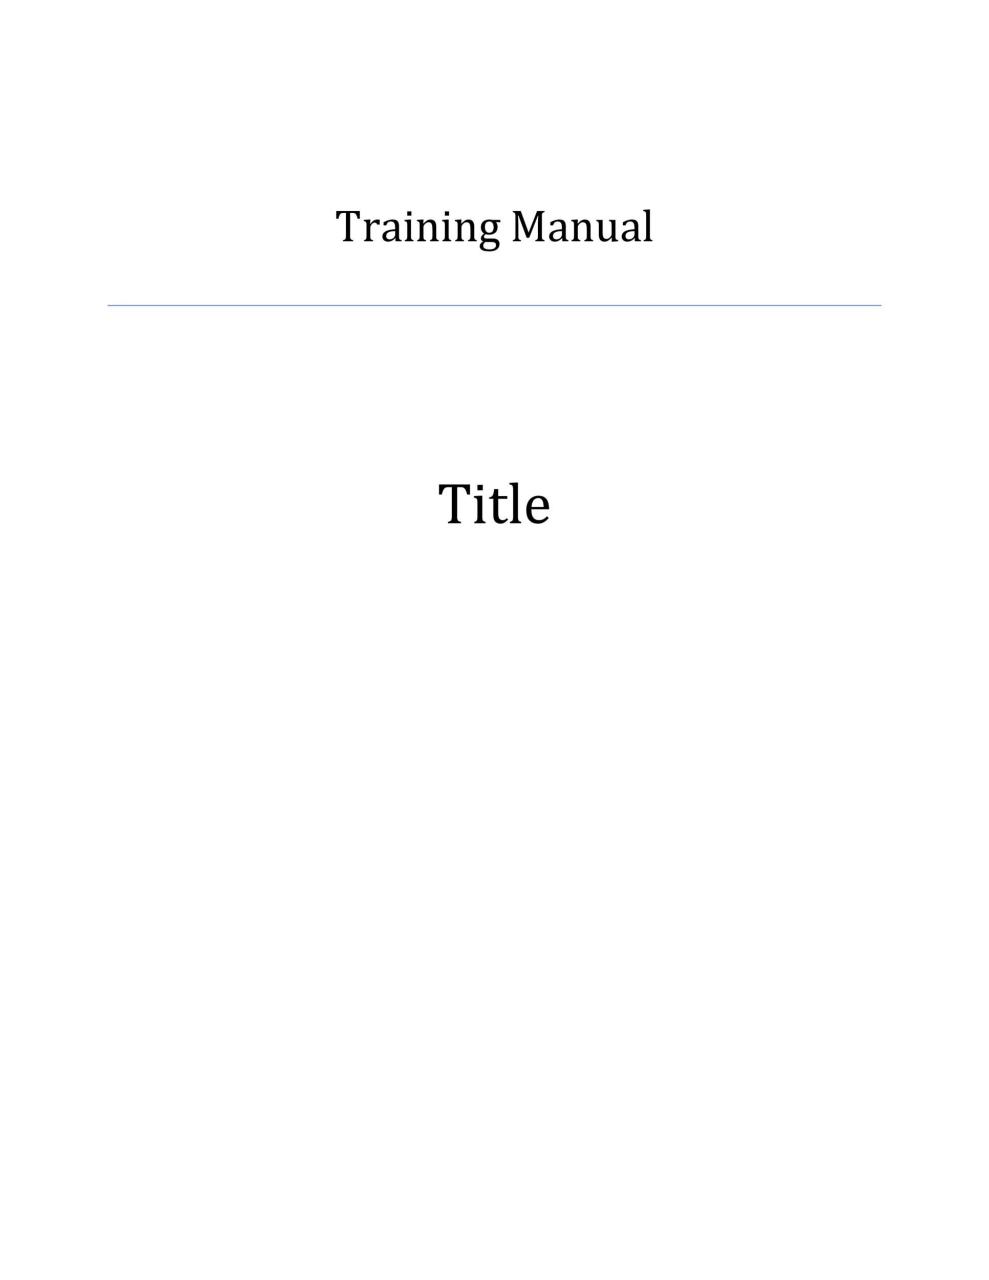 plantilla de manual de entrenamiento gratis 17